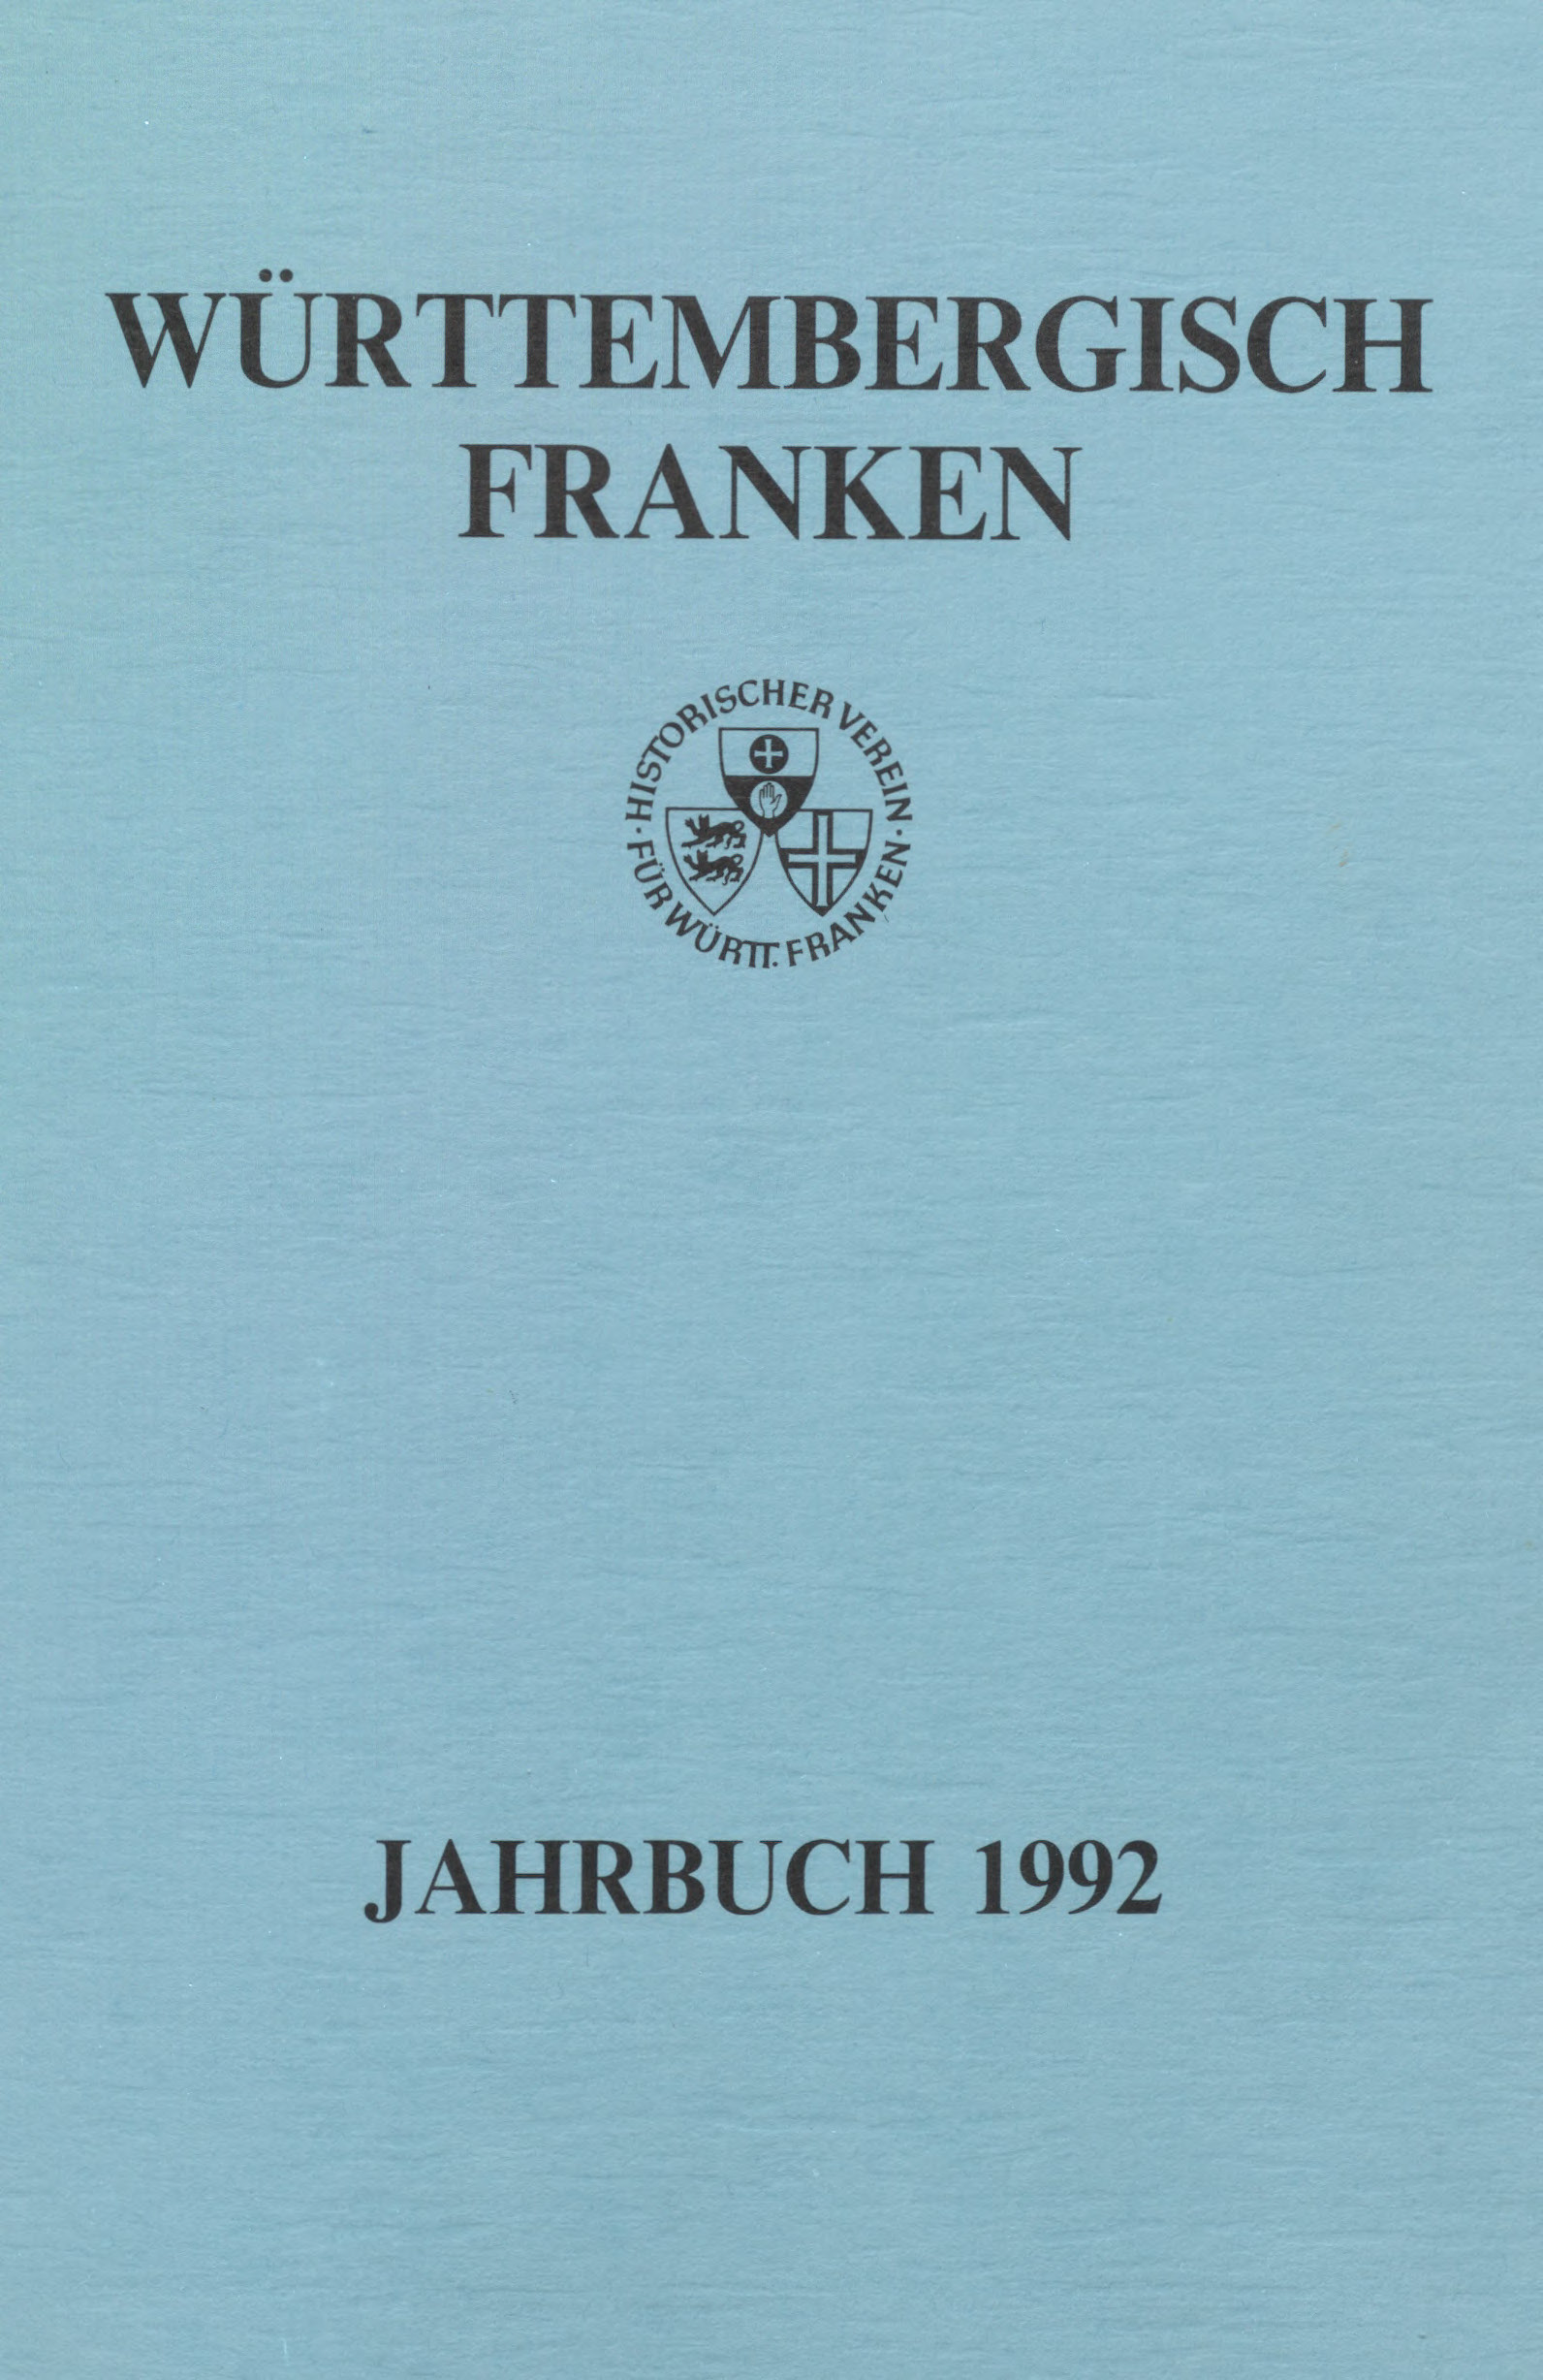                     Ansehen Bd. 76 (1992): Württembergisch Franken
                